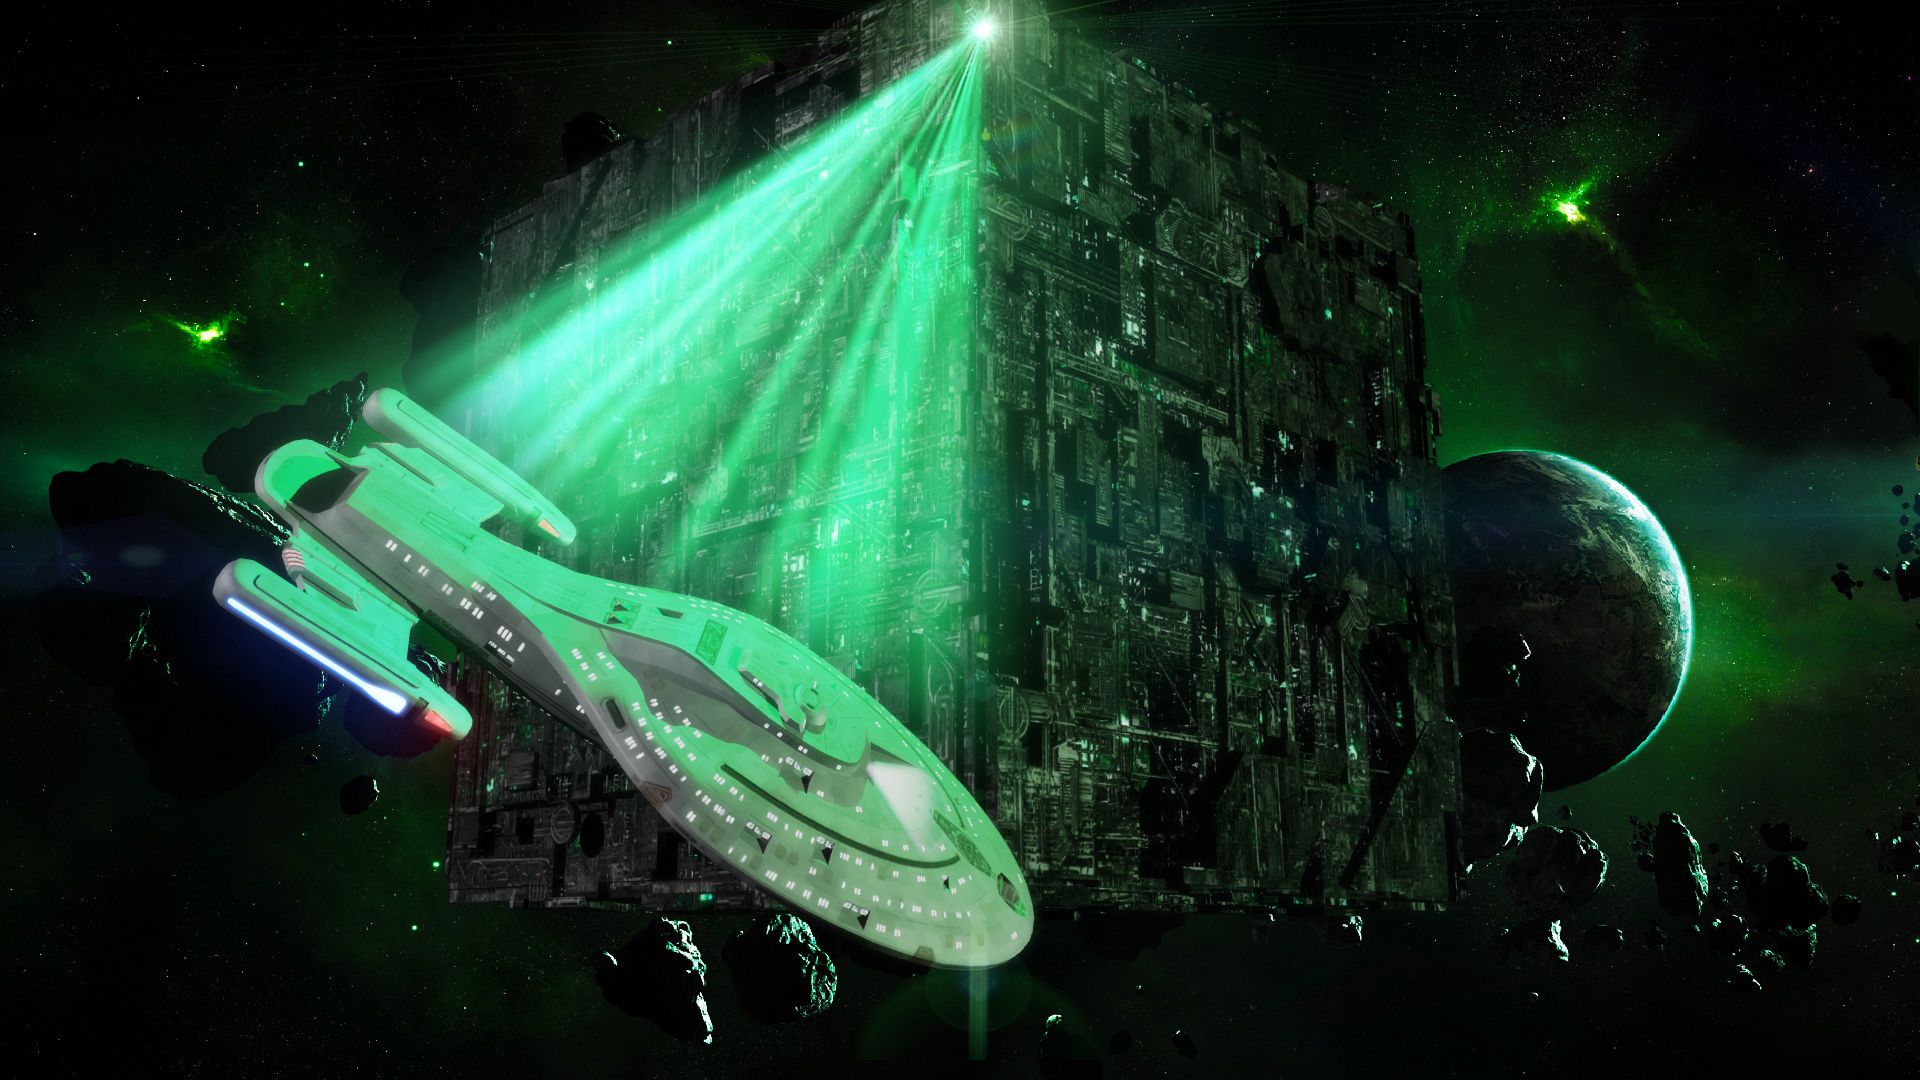 Borg Star Trek Full HD Background. Star trek wallpaper, Star trek wallpaper background, Star trek